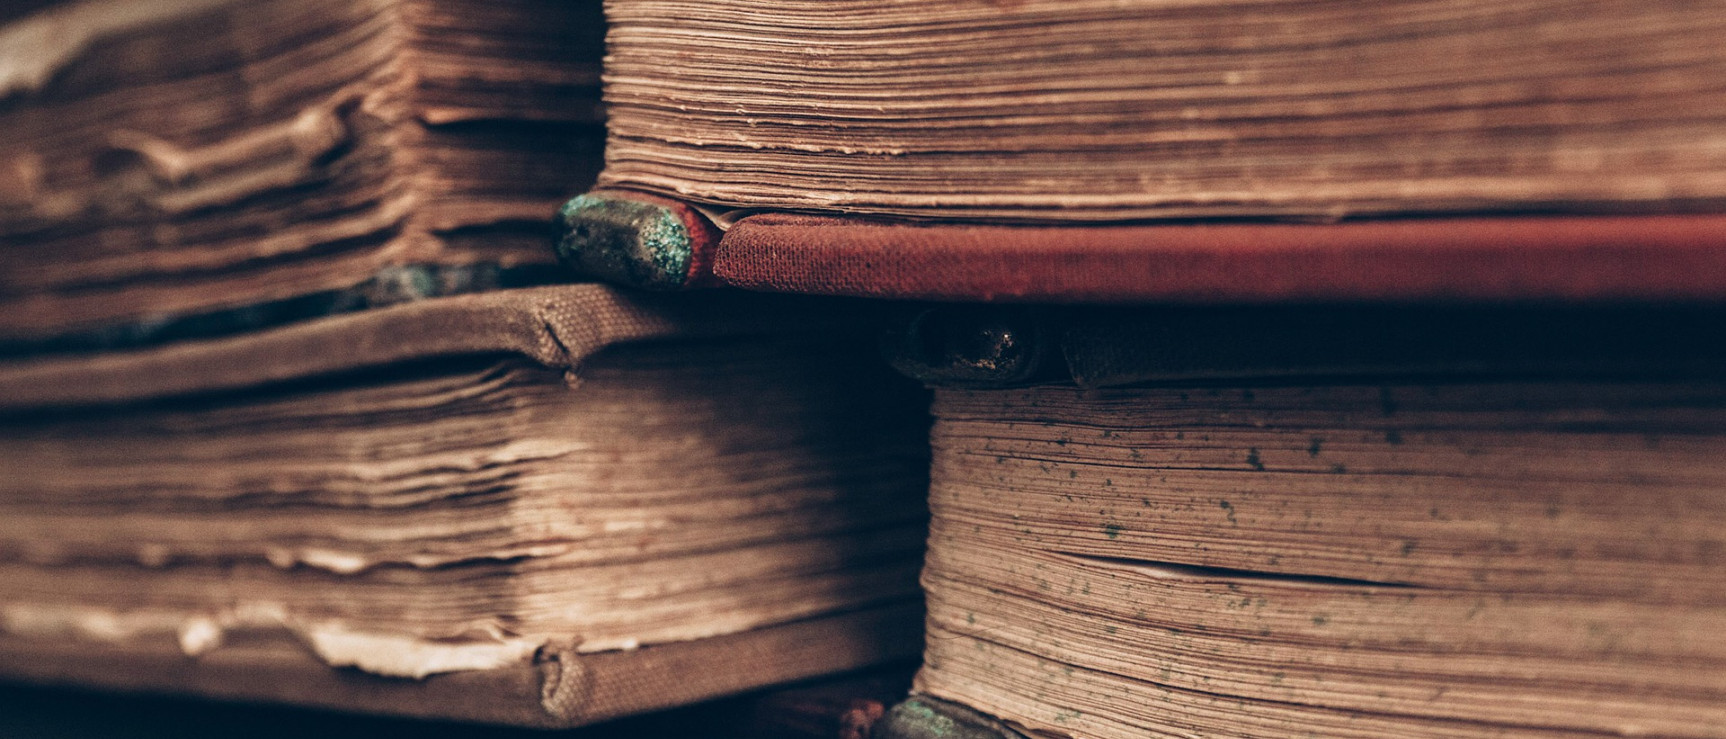 Libros (foto: Pixabay)